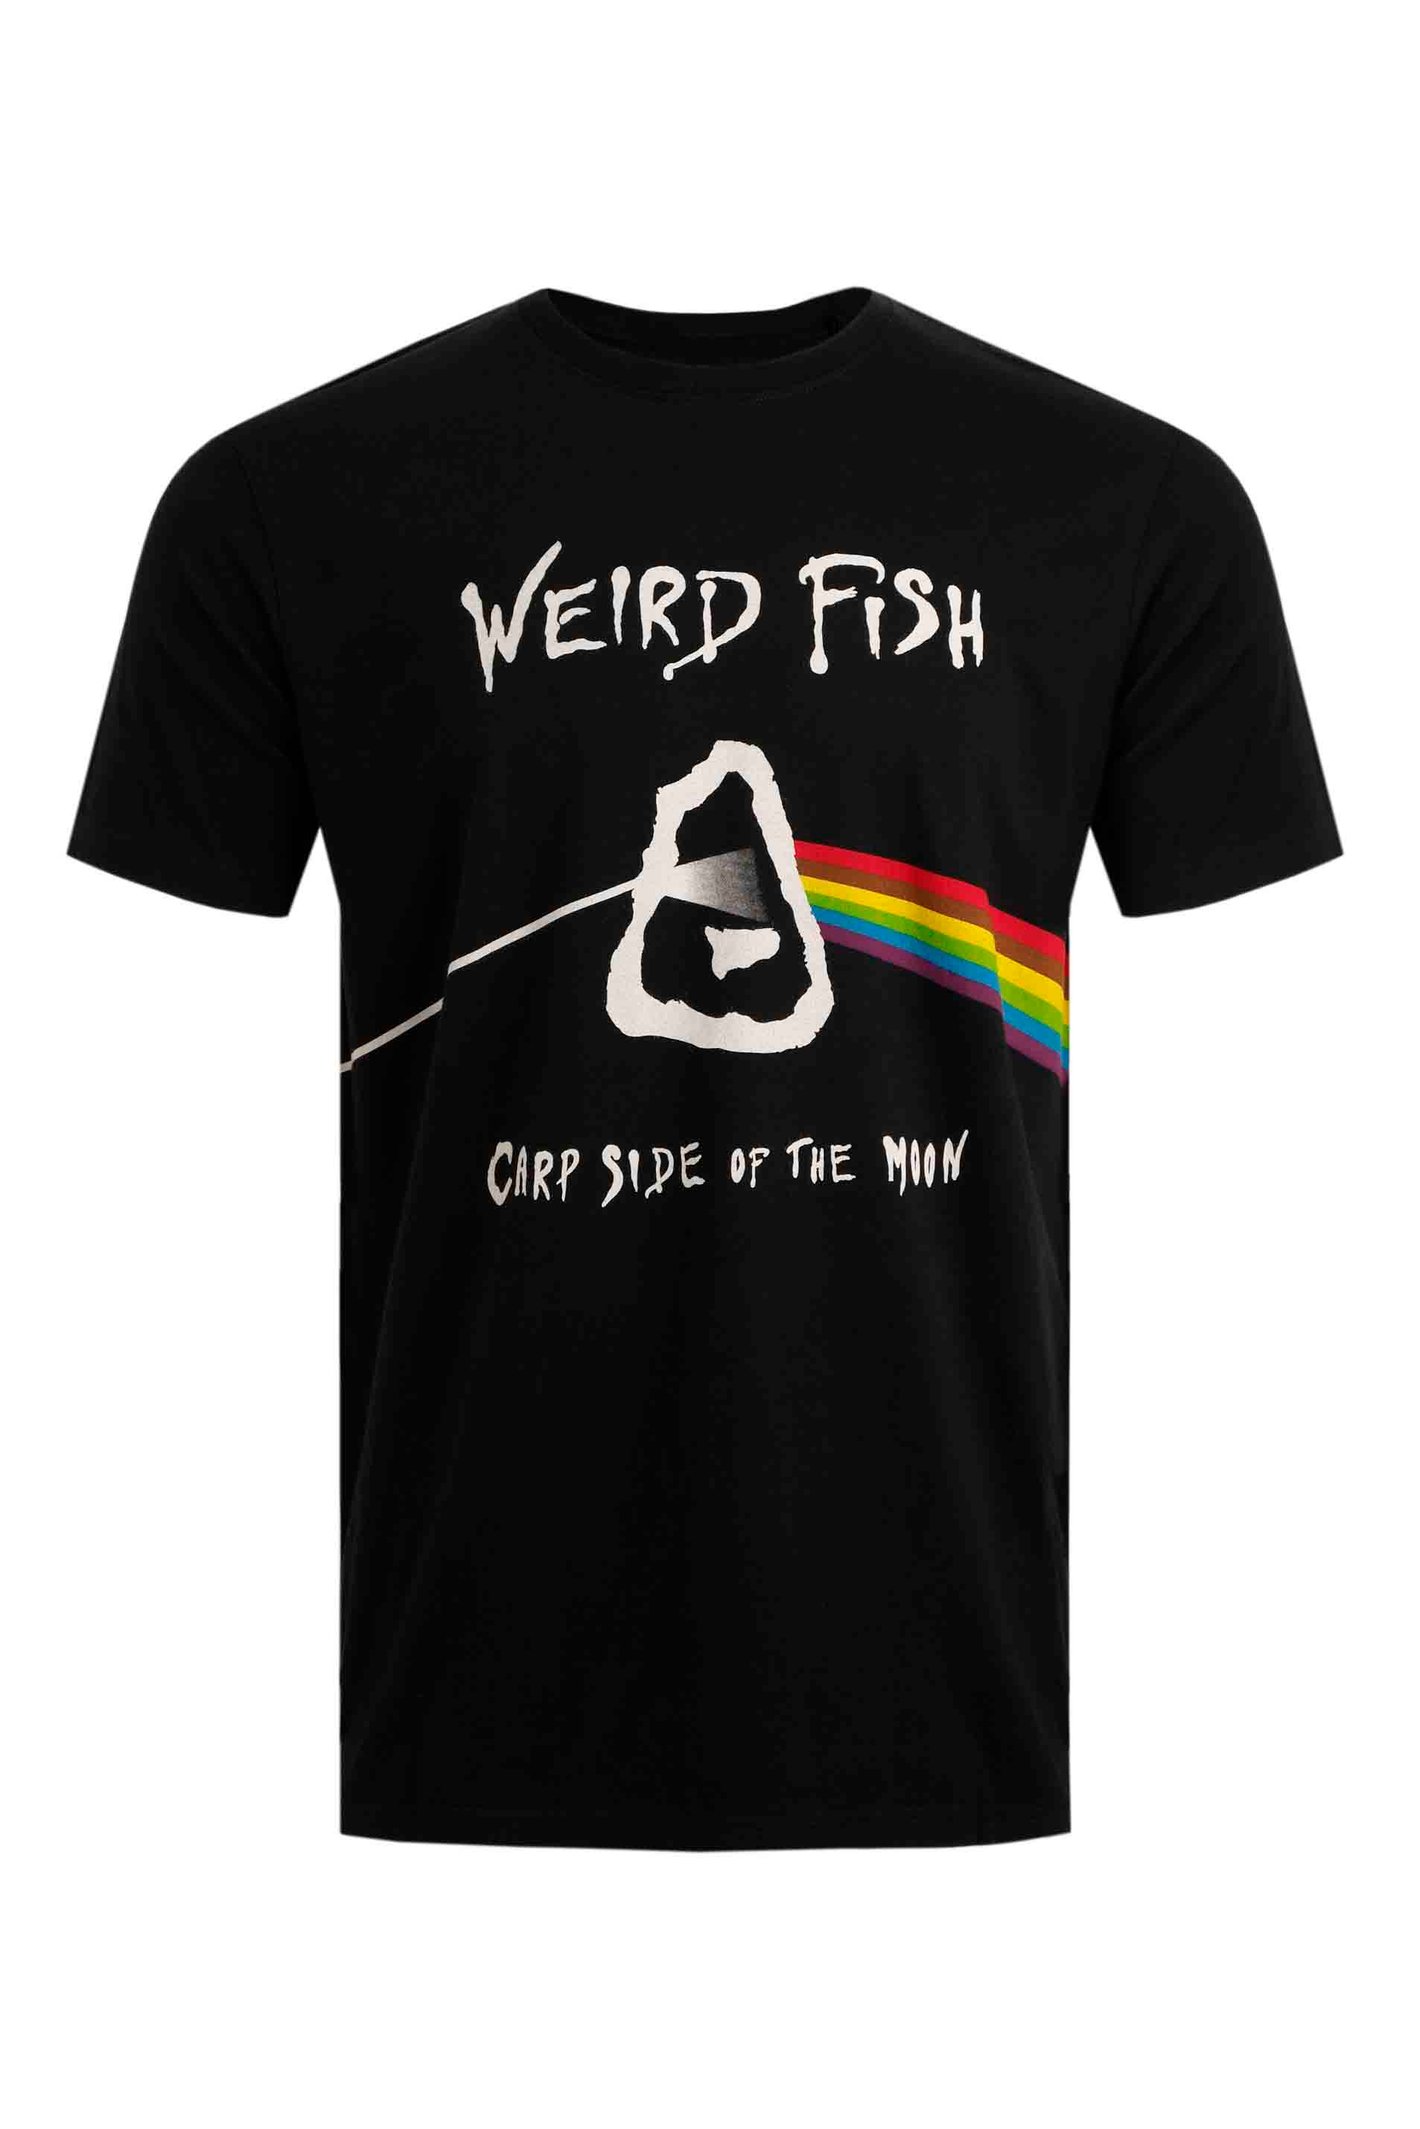 Weird Fish Carp Side Artist T-Shirt Black Size 2XL